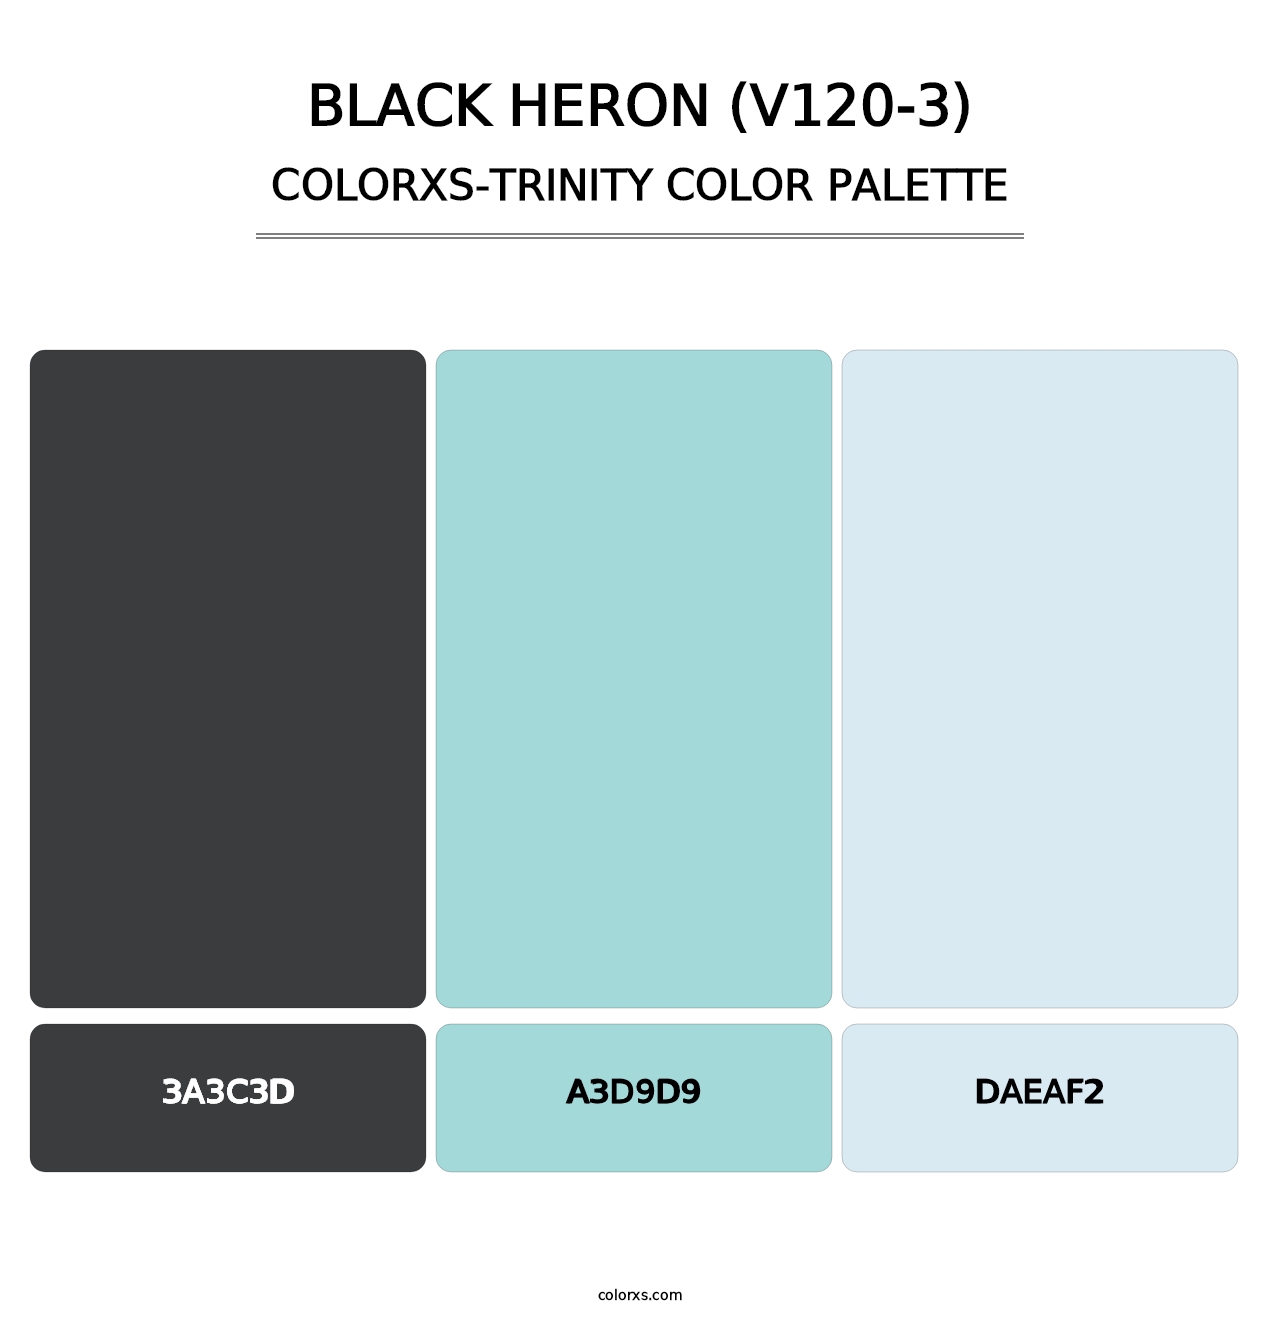 Black Heron (V120-3) - Colorxs Trinity Palette